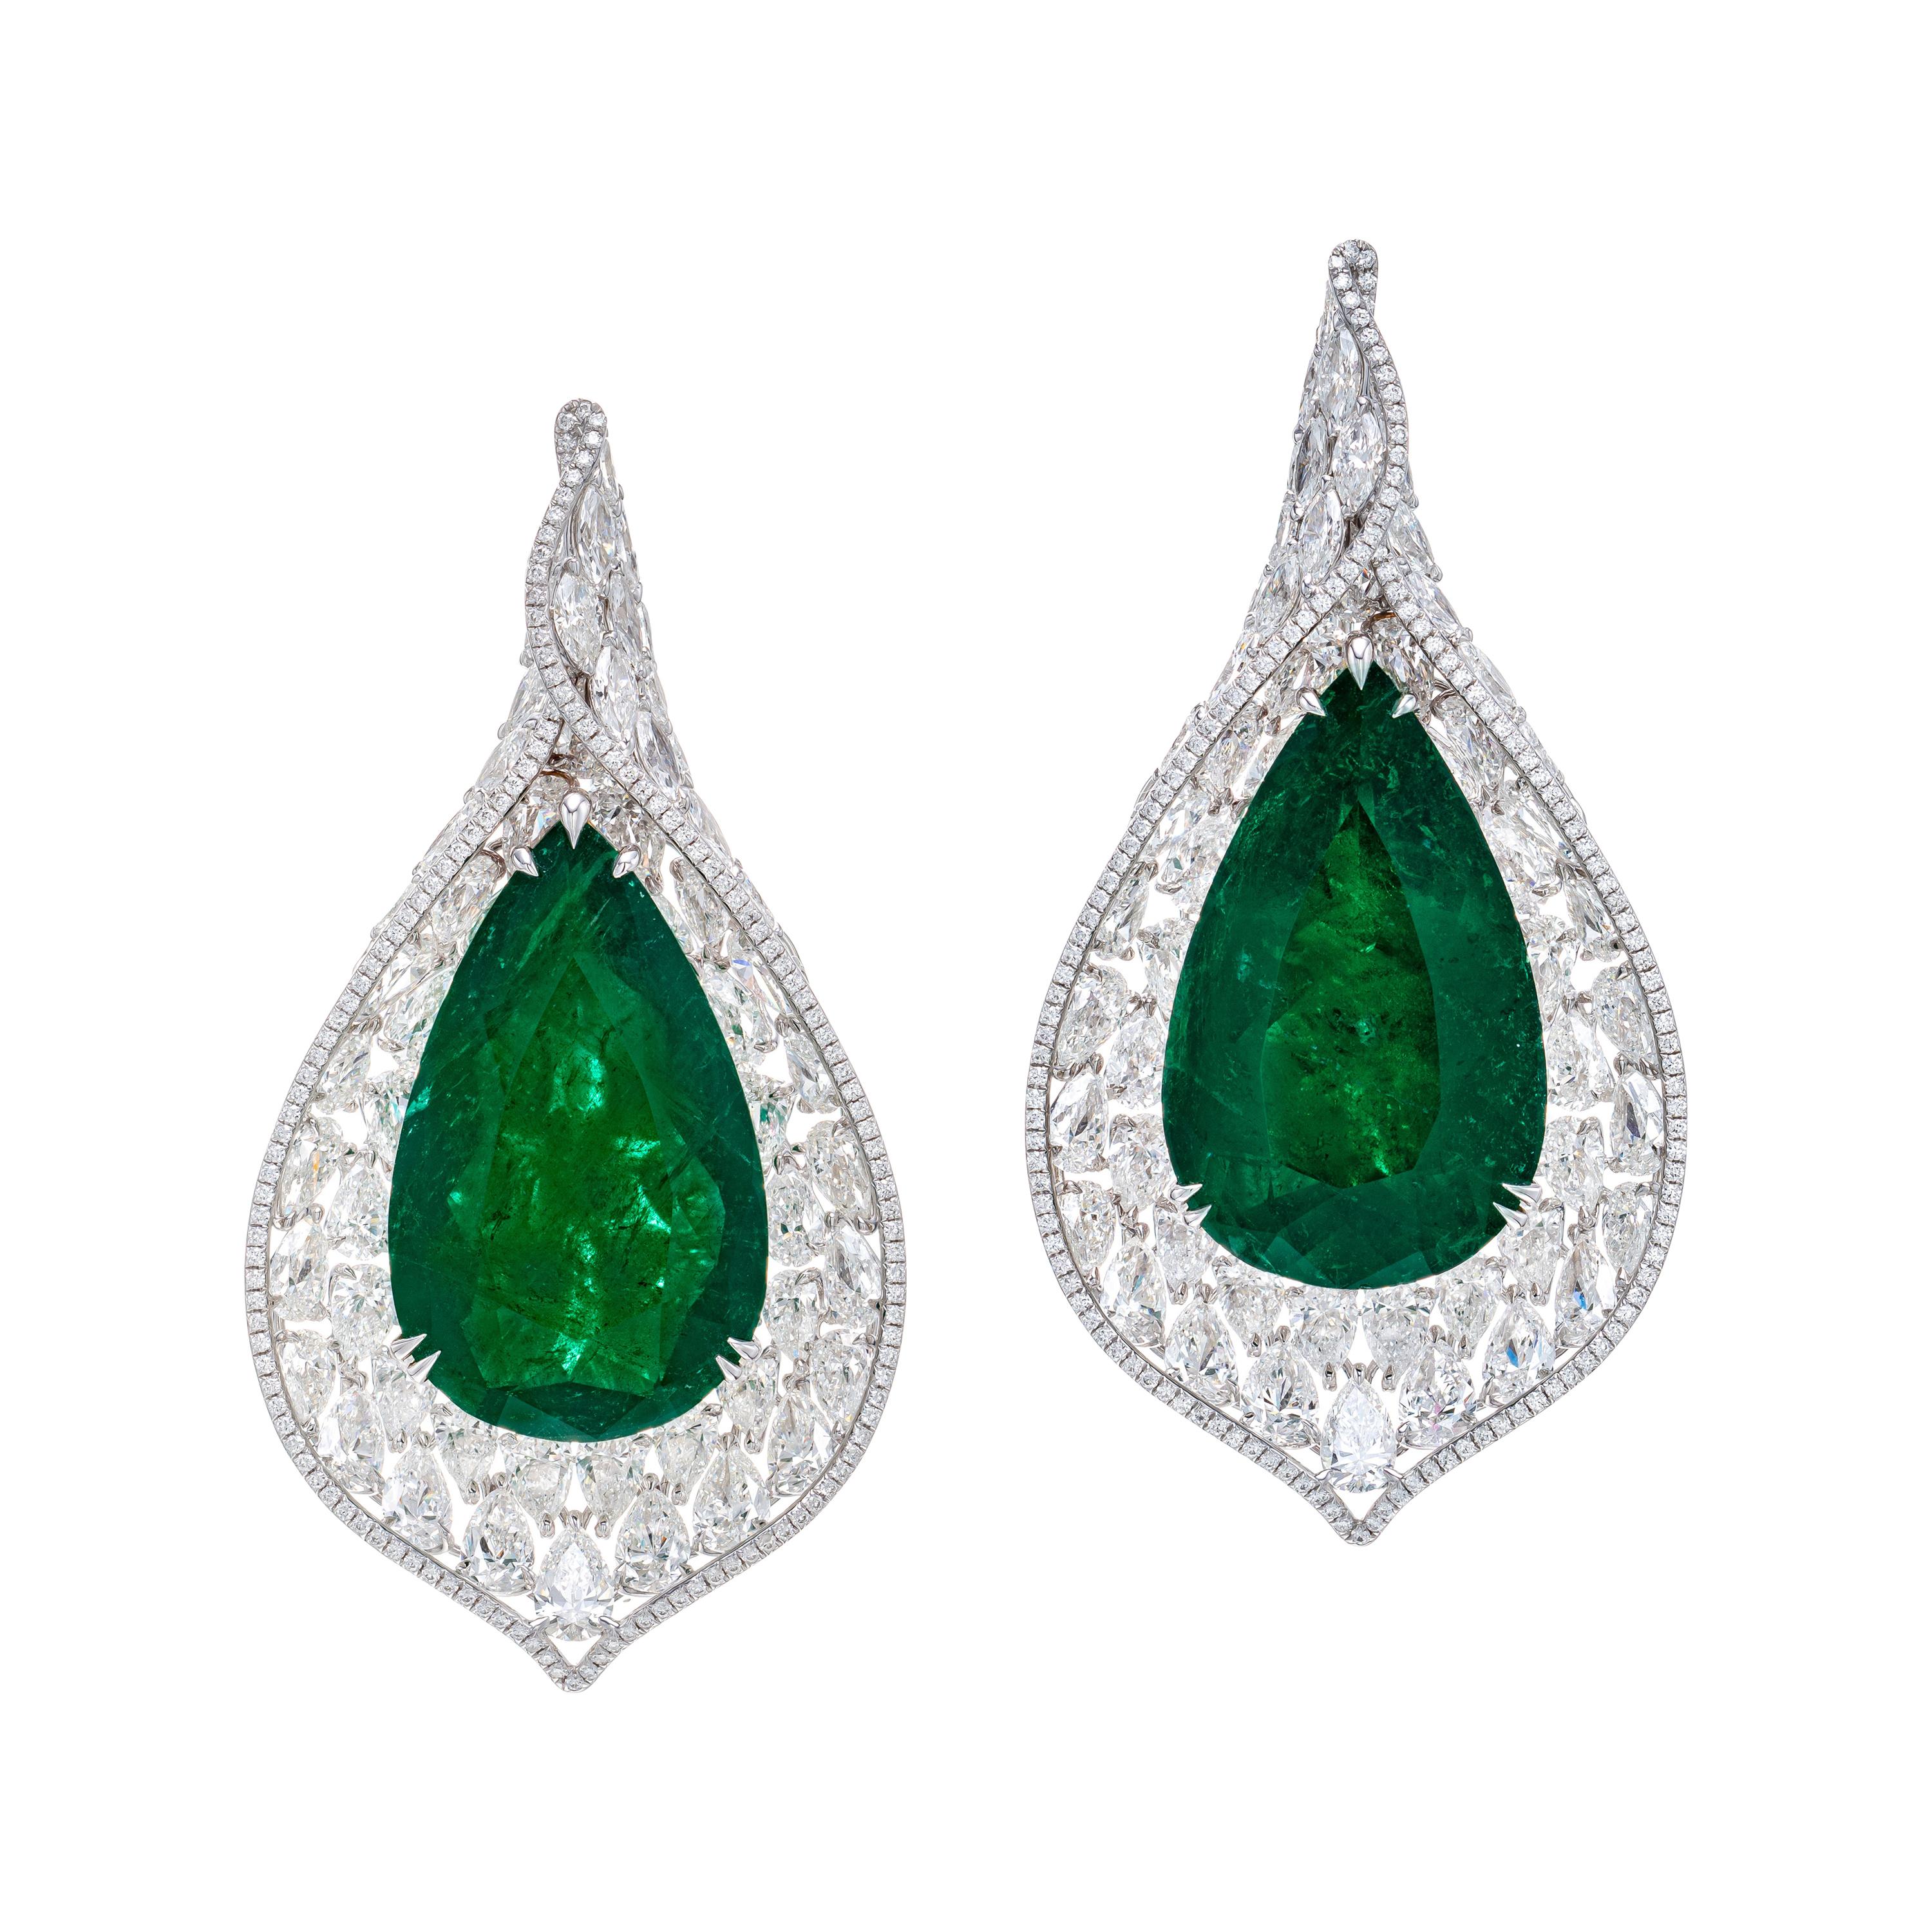 Gubelin-Ohrringe aus 18 Karat Gold mit zertifiziertem 65,97 Karat kolumbianischem Smaragd und Diamanten